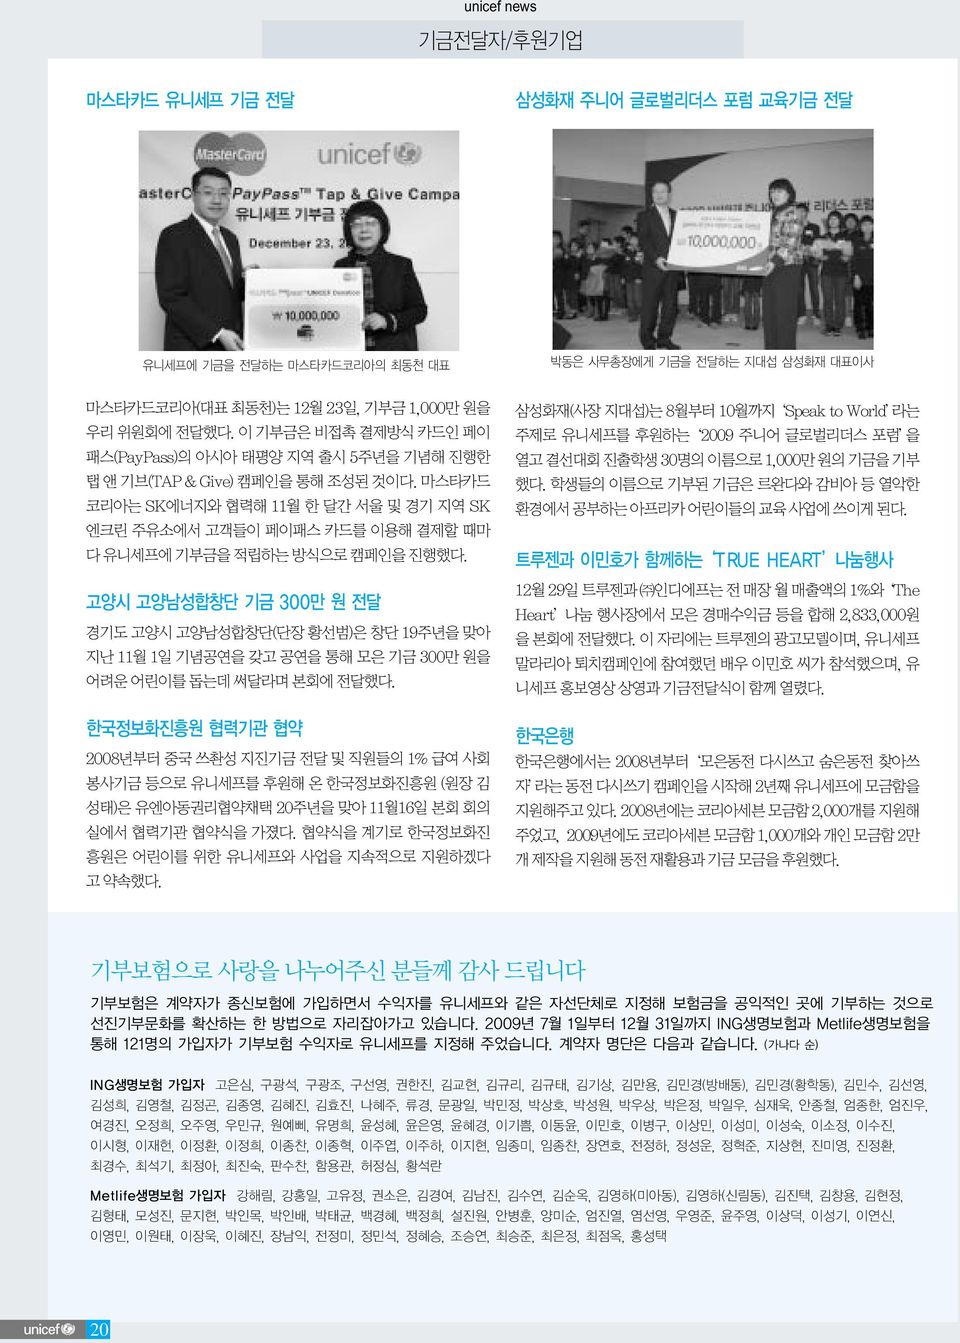 마스타카드 코리아는 SK에너지와 협력해 11월 한 달간 서울 및 경기 지역 SK 엔크린 주유소에서 고객들이 페이패스 카드를 이용해 결제할 때마 다 유니세프에 기부금을 적립하는 방식으로 캠페인을 진행했다.